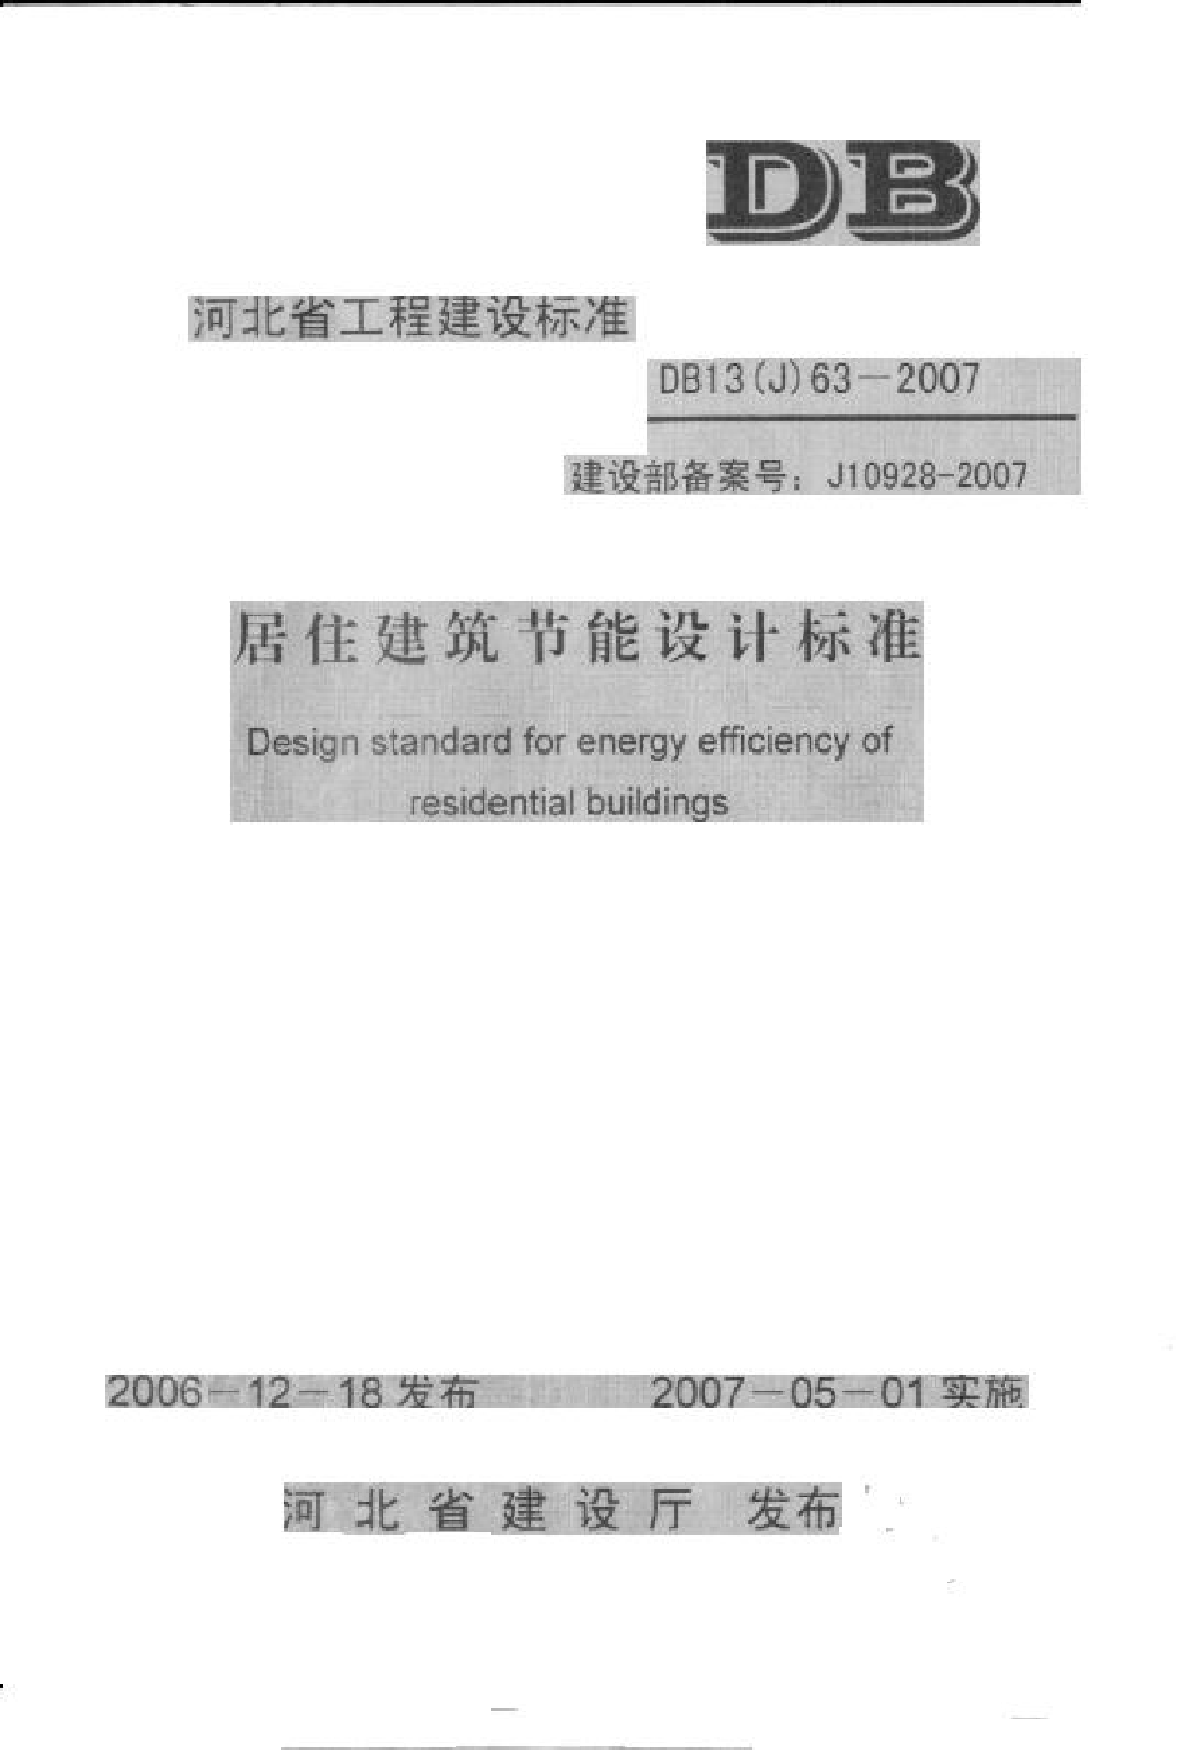 河北省居住建筑节能设计标准DB13(J)63-2007-图一